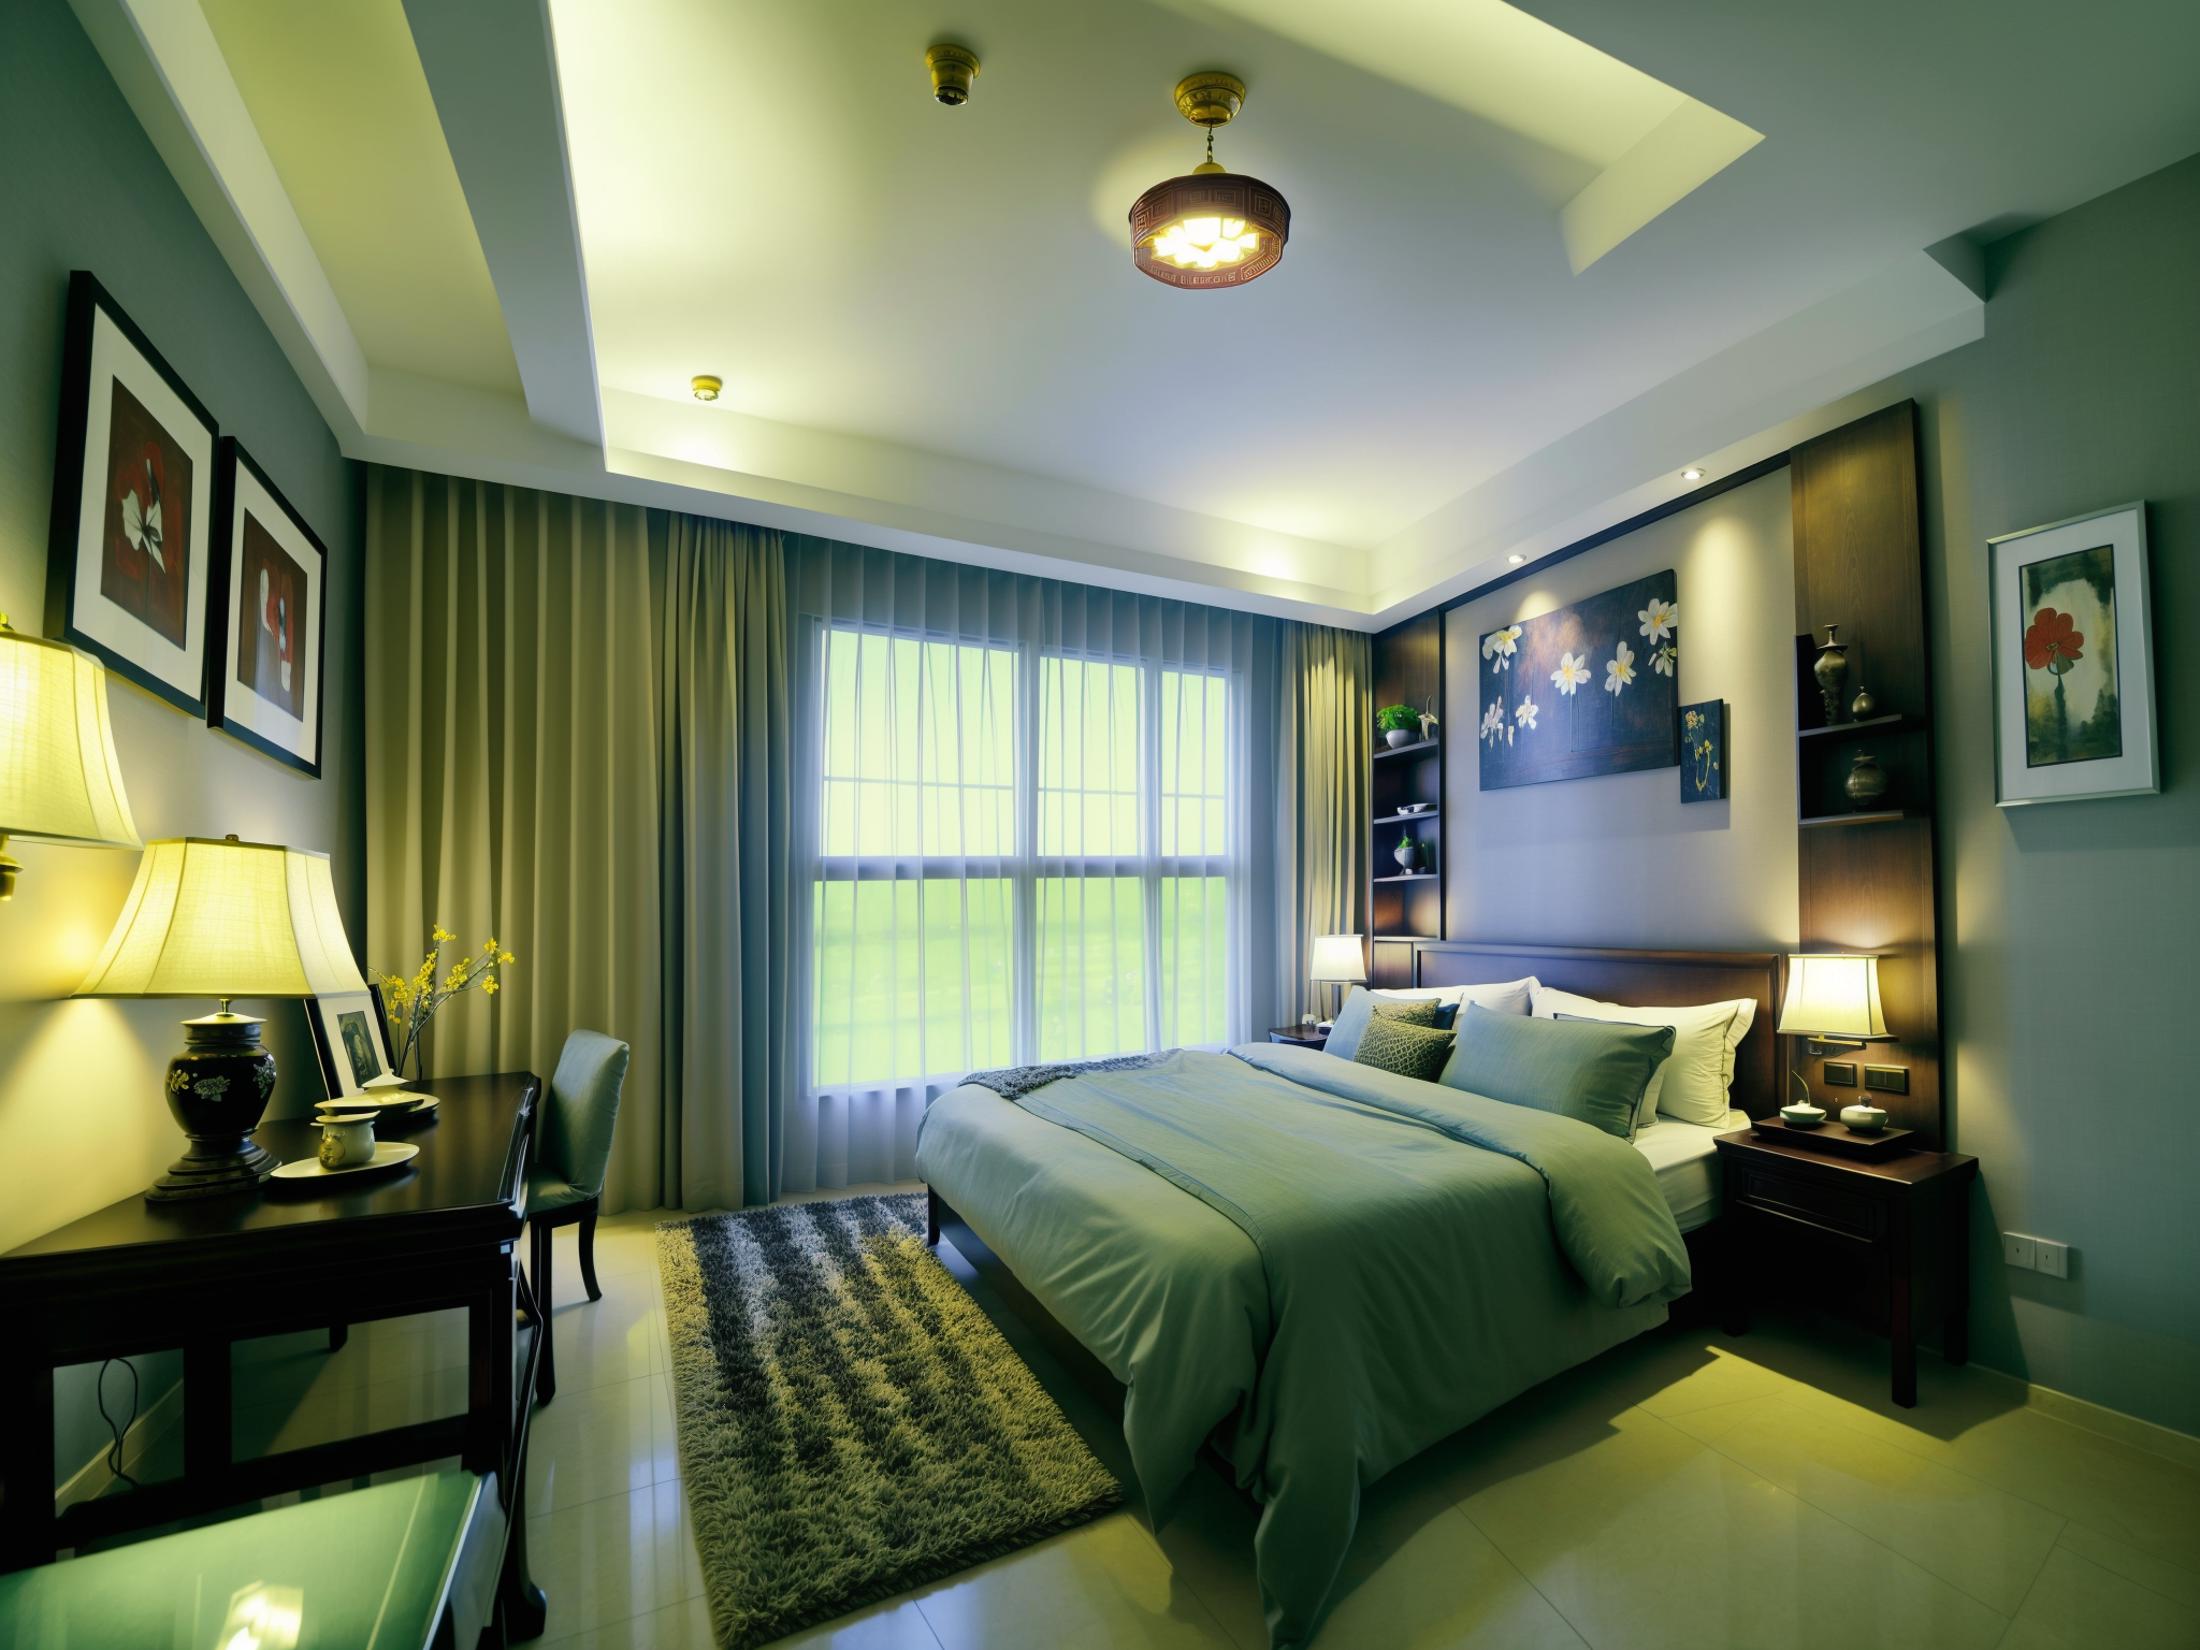 JJ's Interior Space - Bedroom image by jjhuang